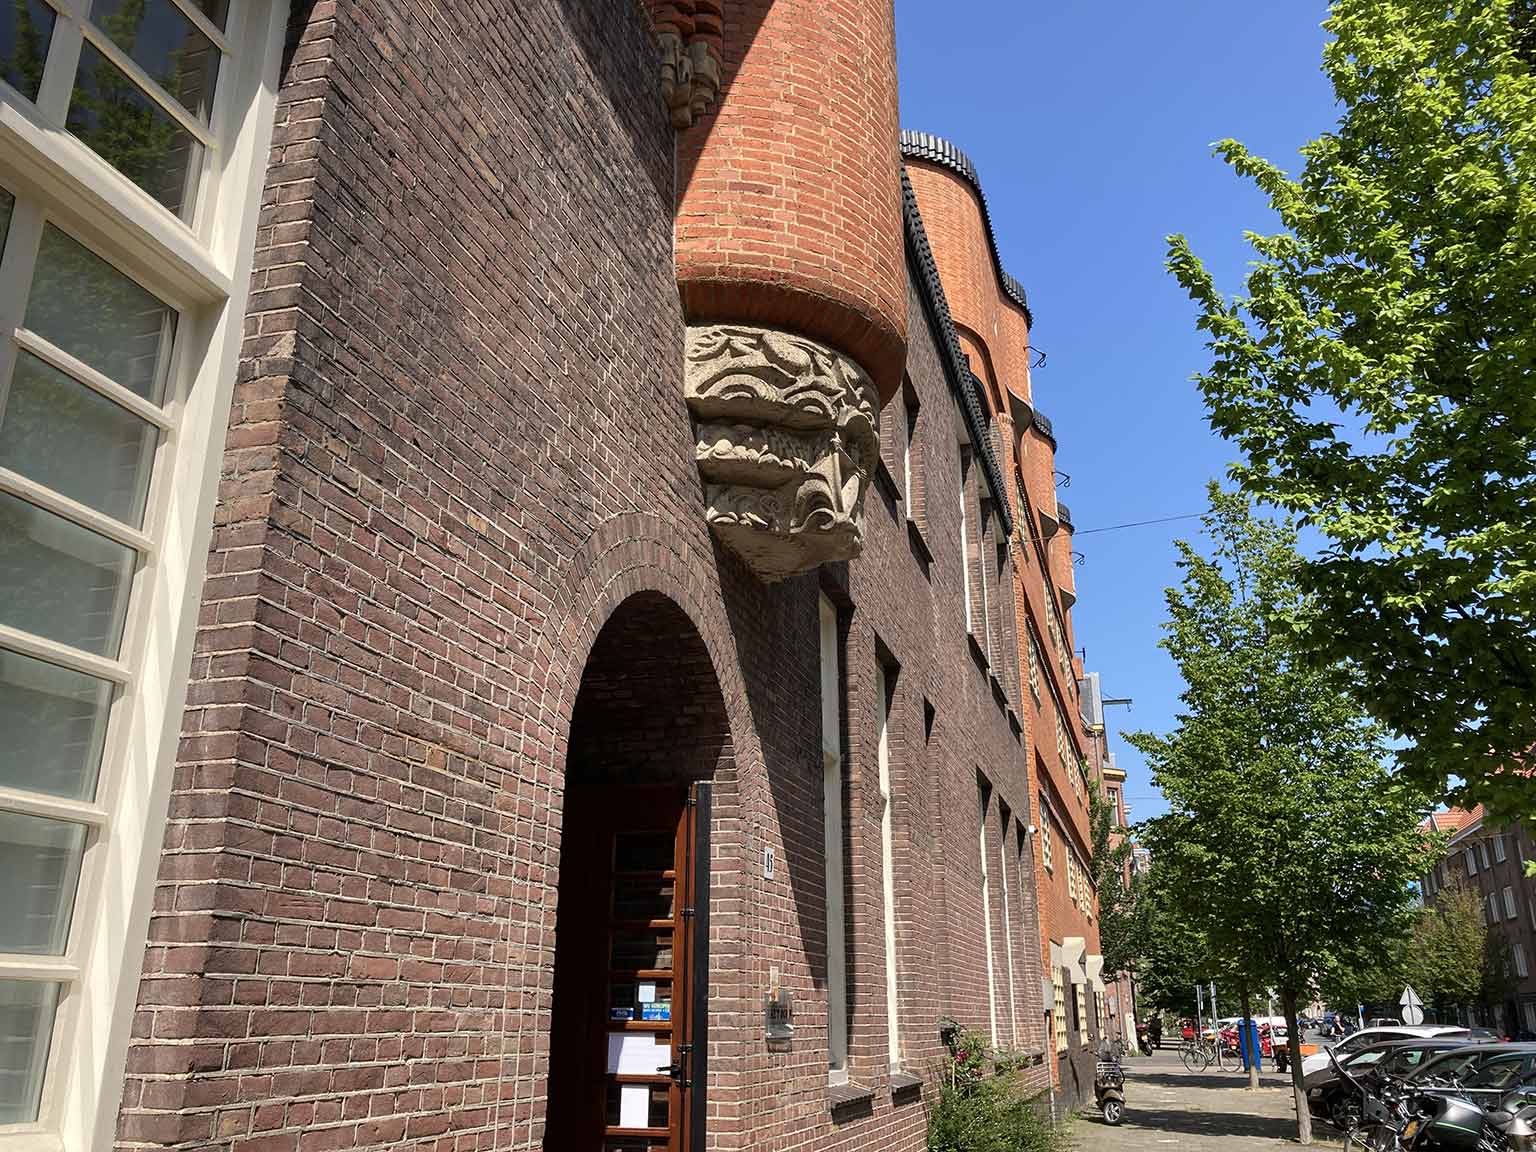 Het Schip, Amsterdam, museum entrance at Oostzaanstraat 45